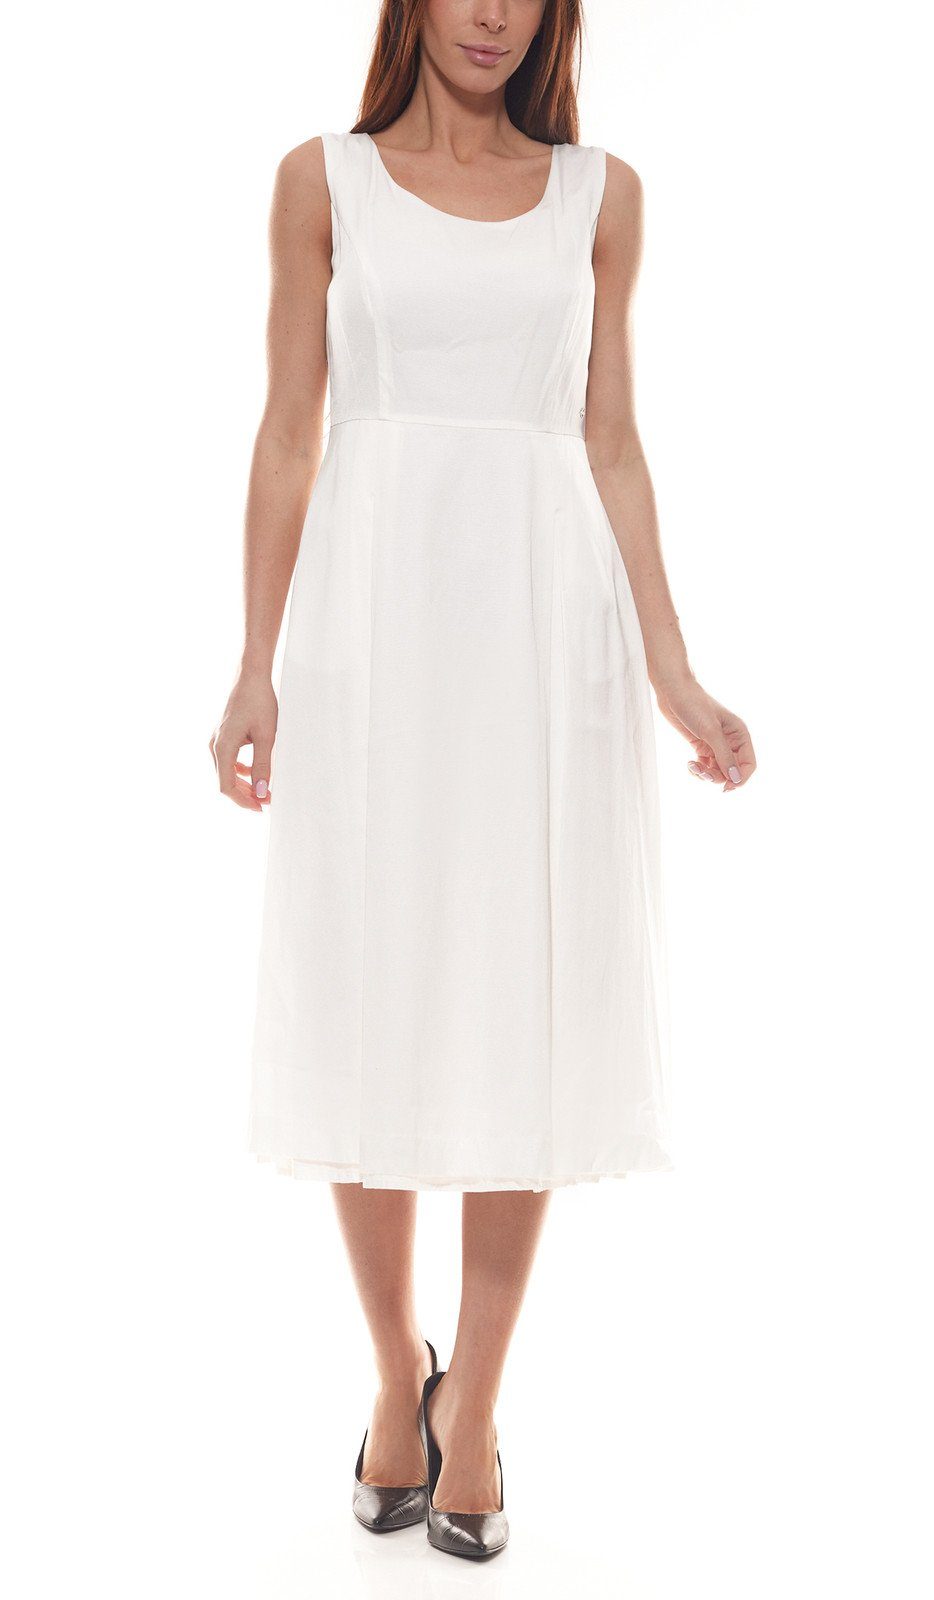 GUIDO MARIA KRETSCHMER Sommerkleid »GUIDO MARIA KRETSCHMER Midi-Kleid  stilvolles Damen Ausgeh-Kleid mit kleiner GMK-Applikation Freizeit-Kleid  Weiß« online kaufen | OTTO